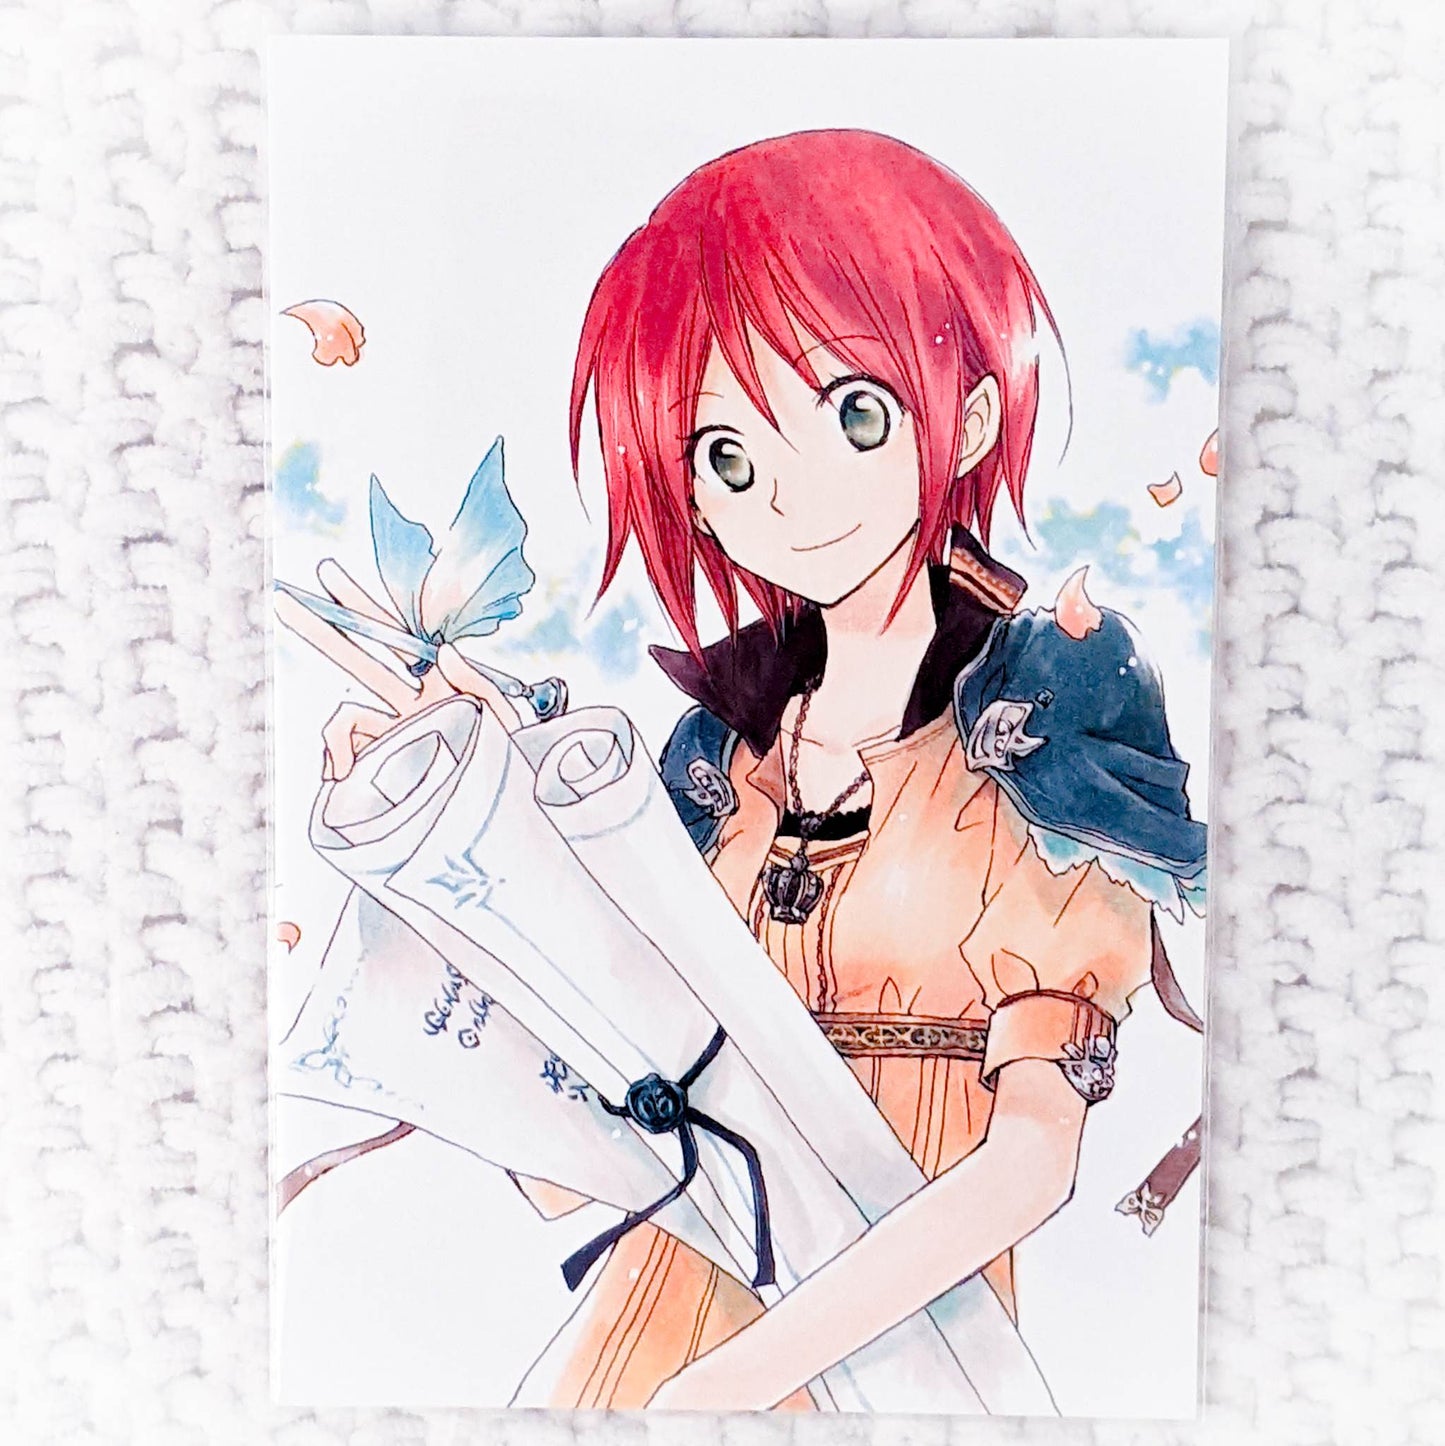 Shirayuki - Snow White with the Red Hair Manga Art 15th Anniversary Postcard